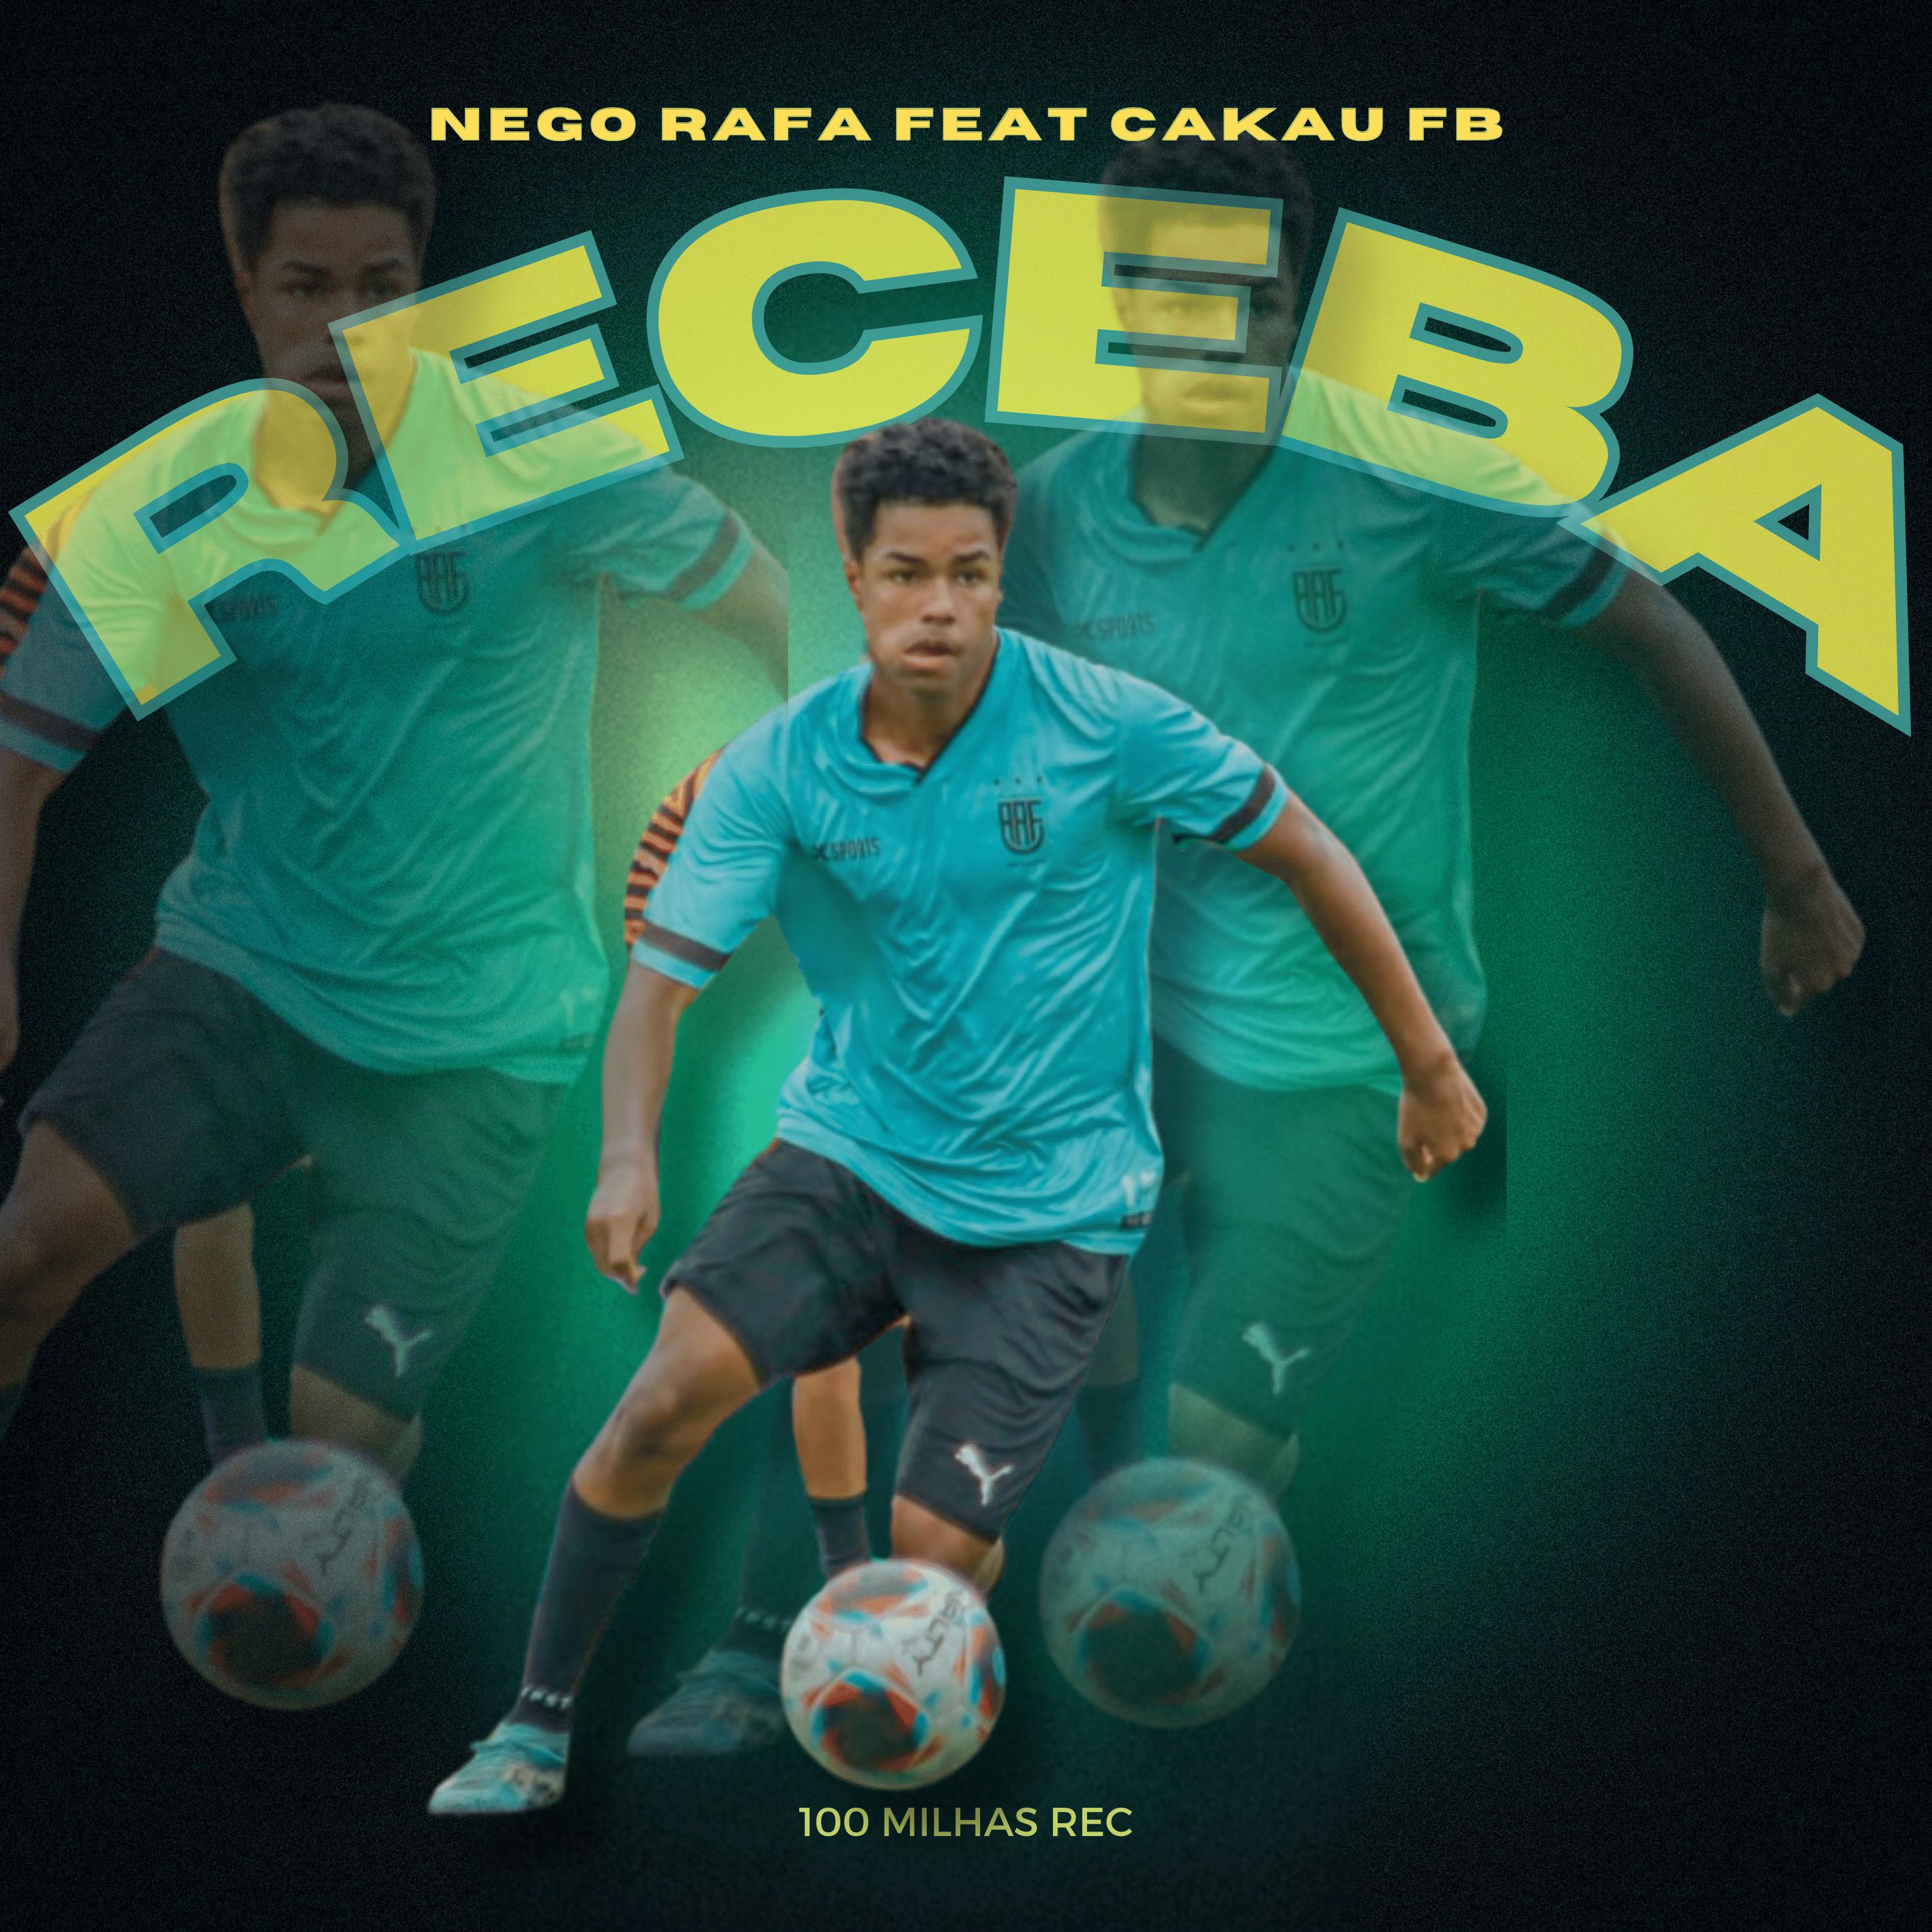 Постер альбома Receba